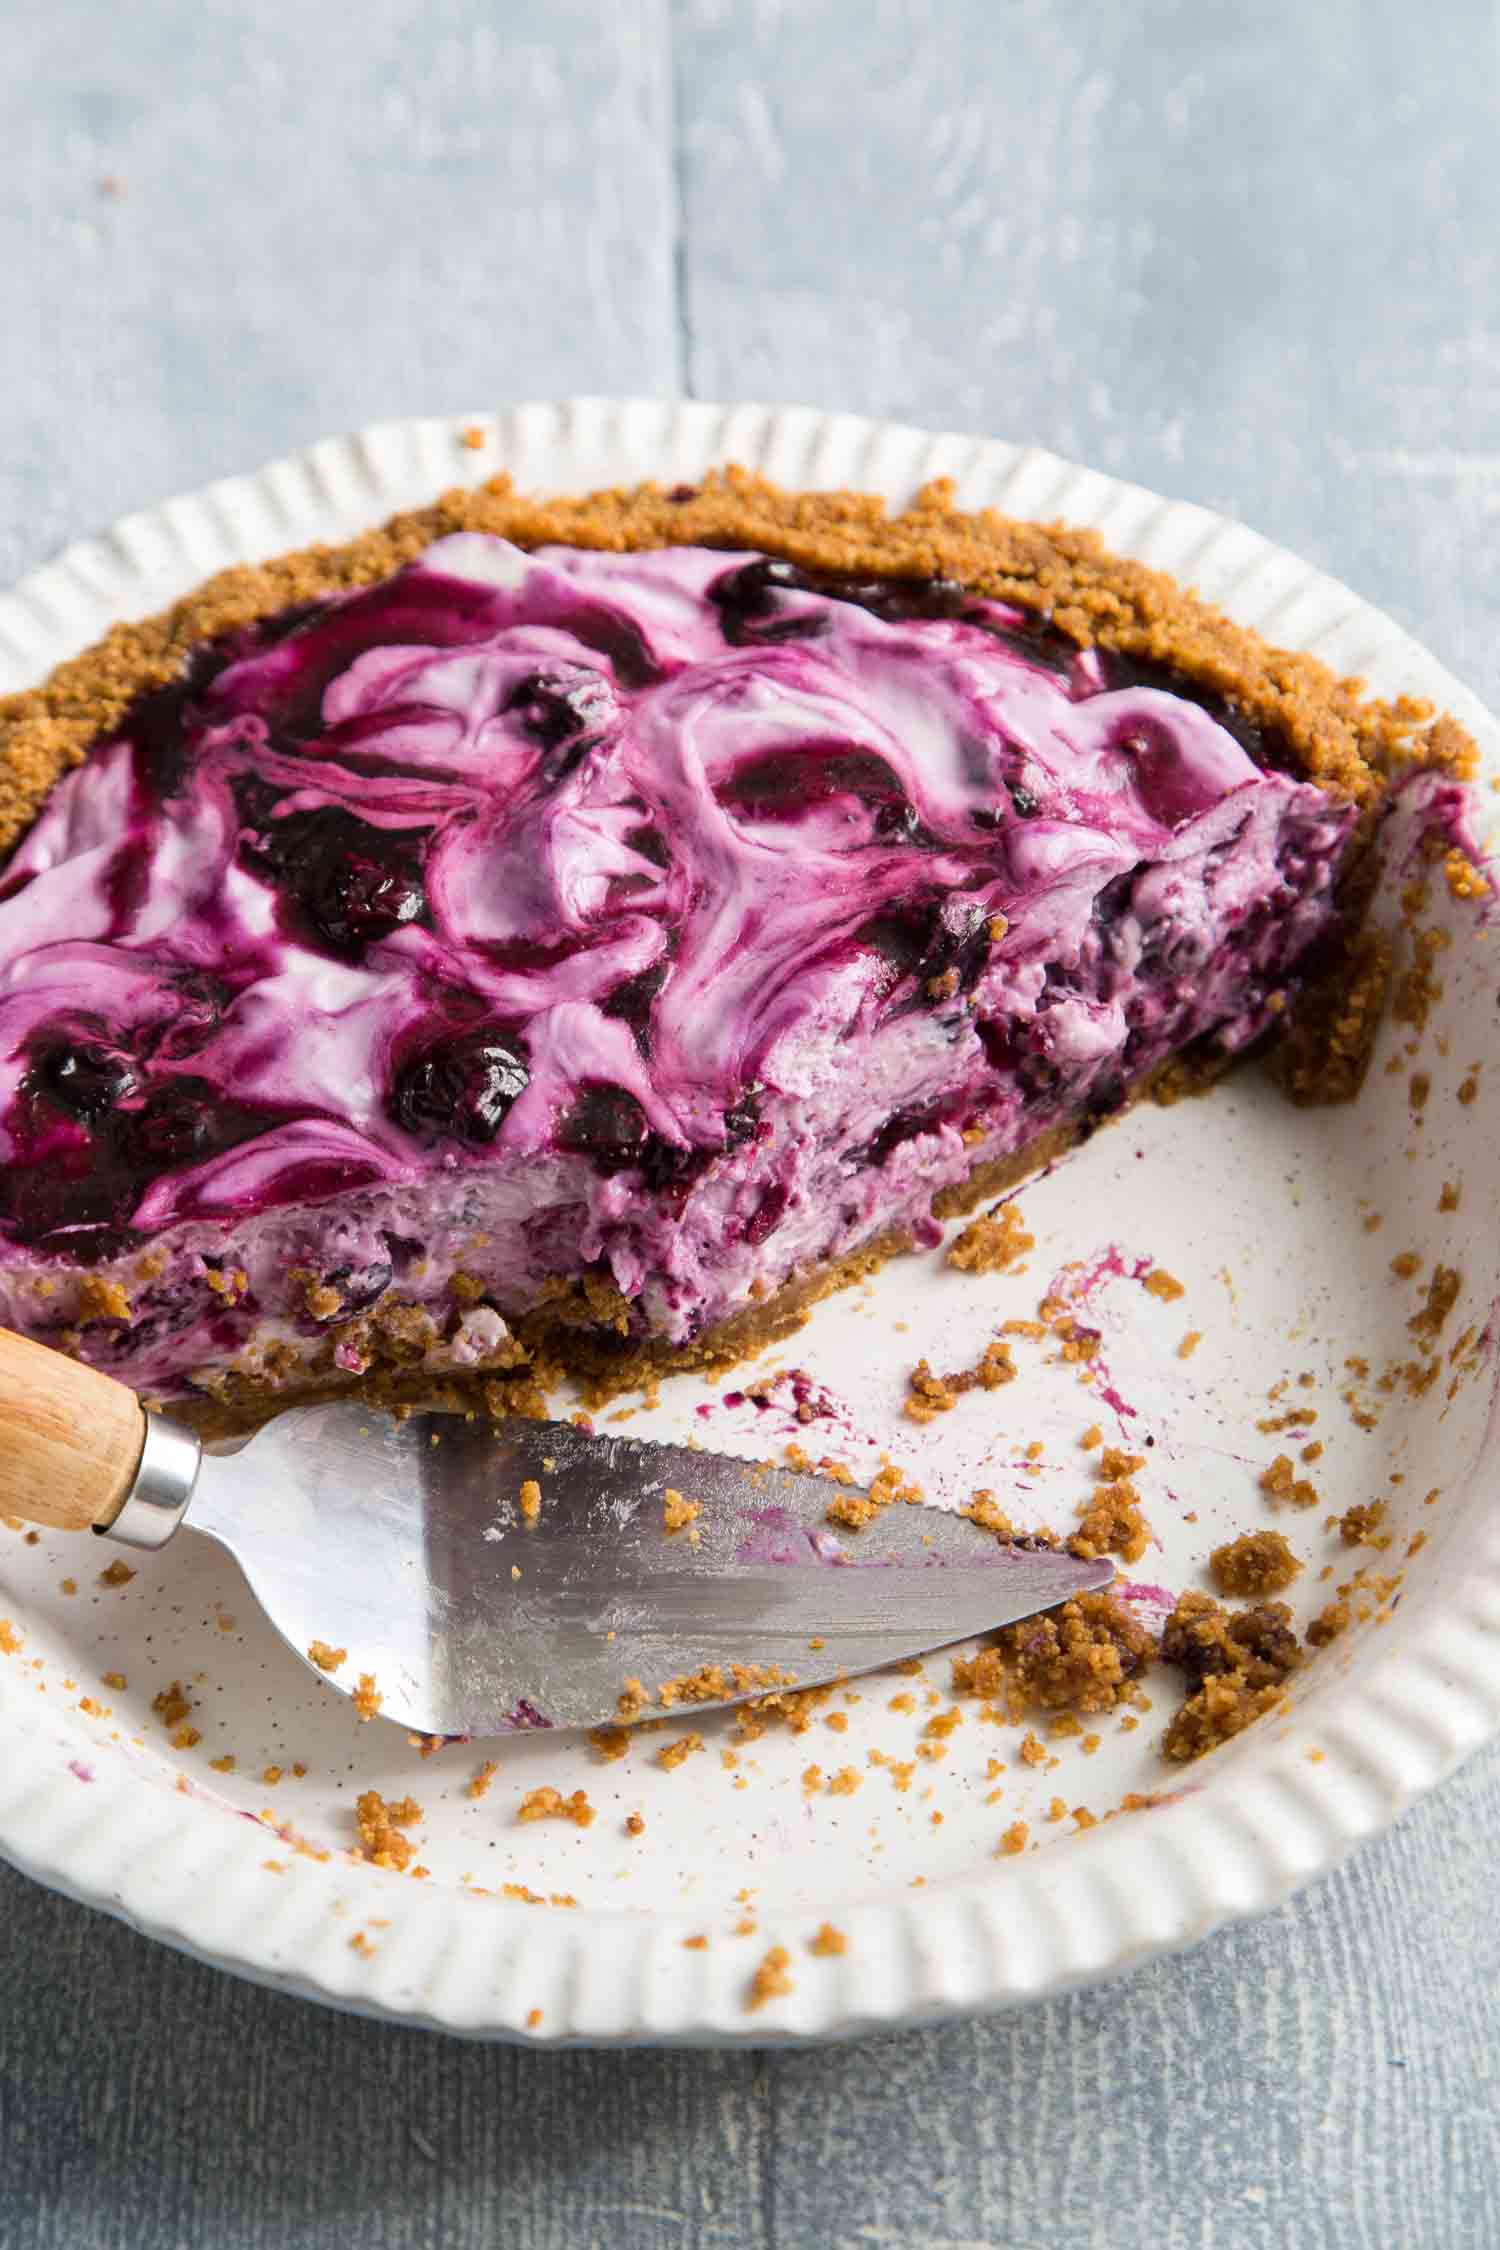 Blueberry Icebox Pie